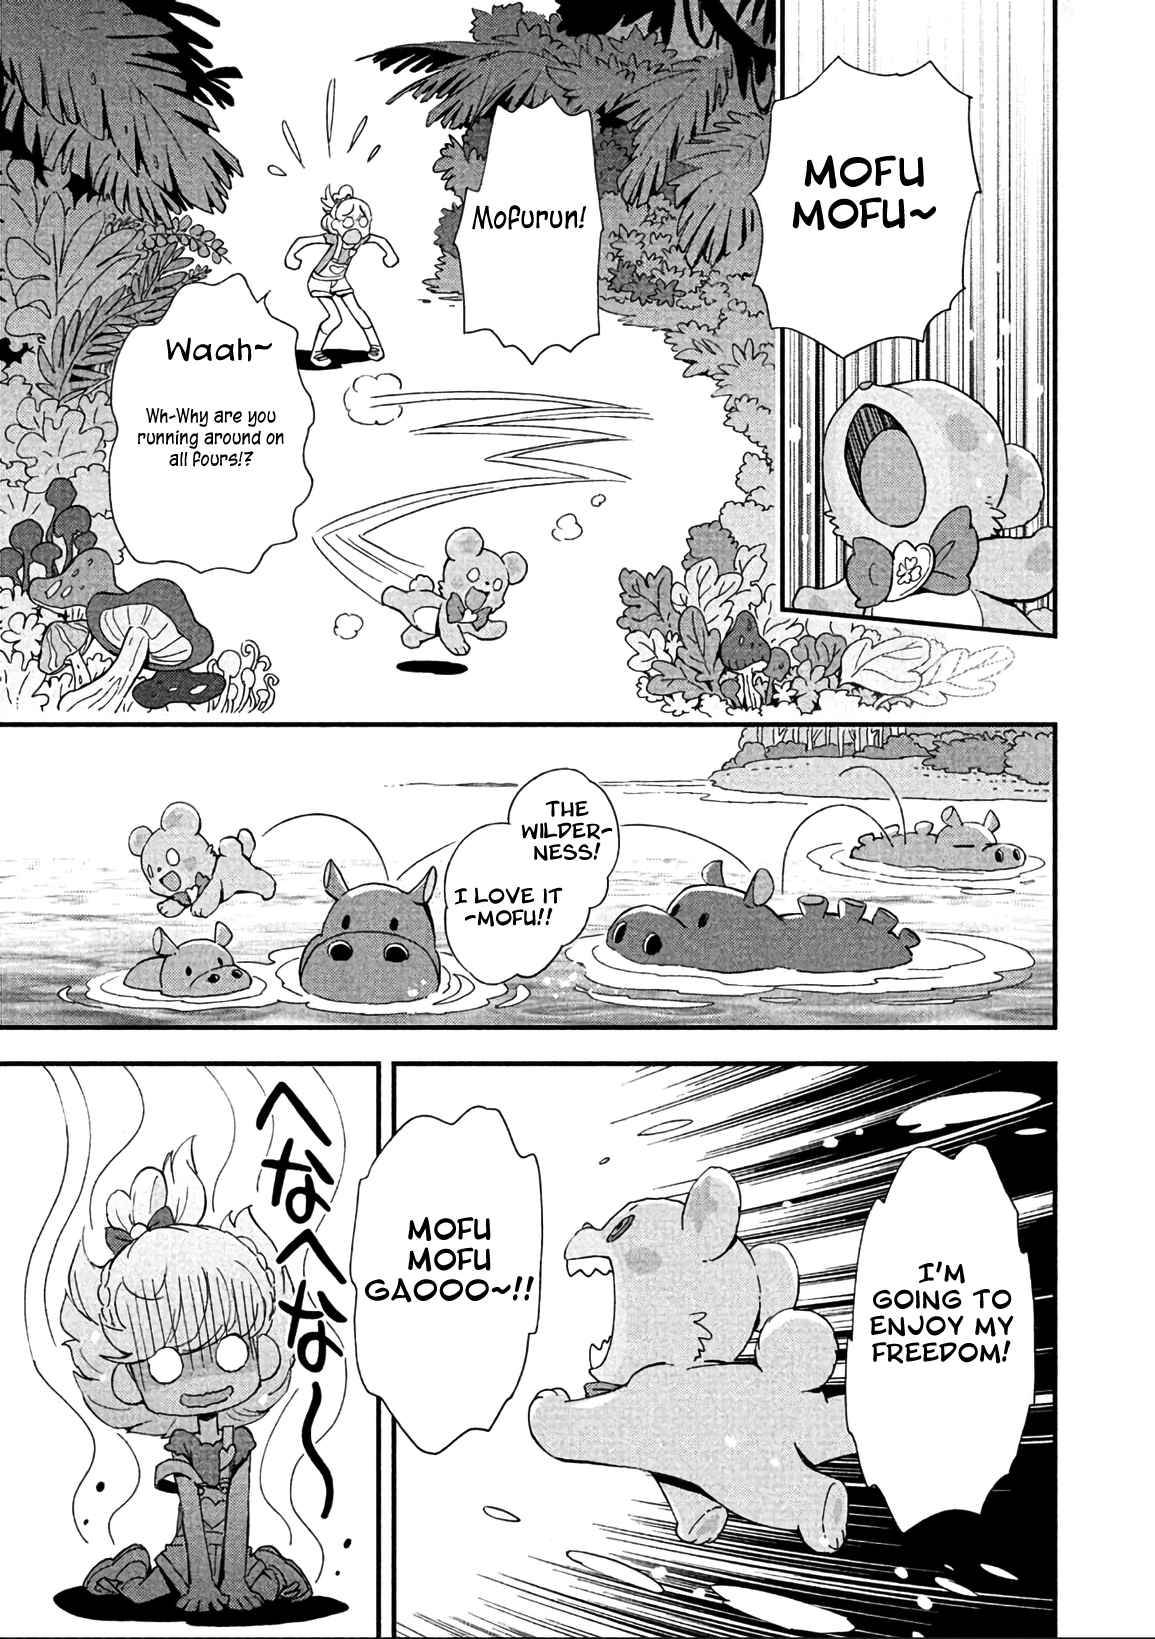 Mahou Tsukai PreCure! Vol. 2 Ch. 14 (END)